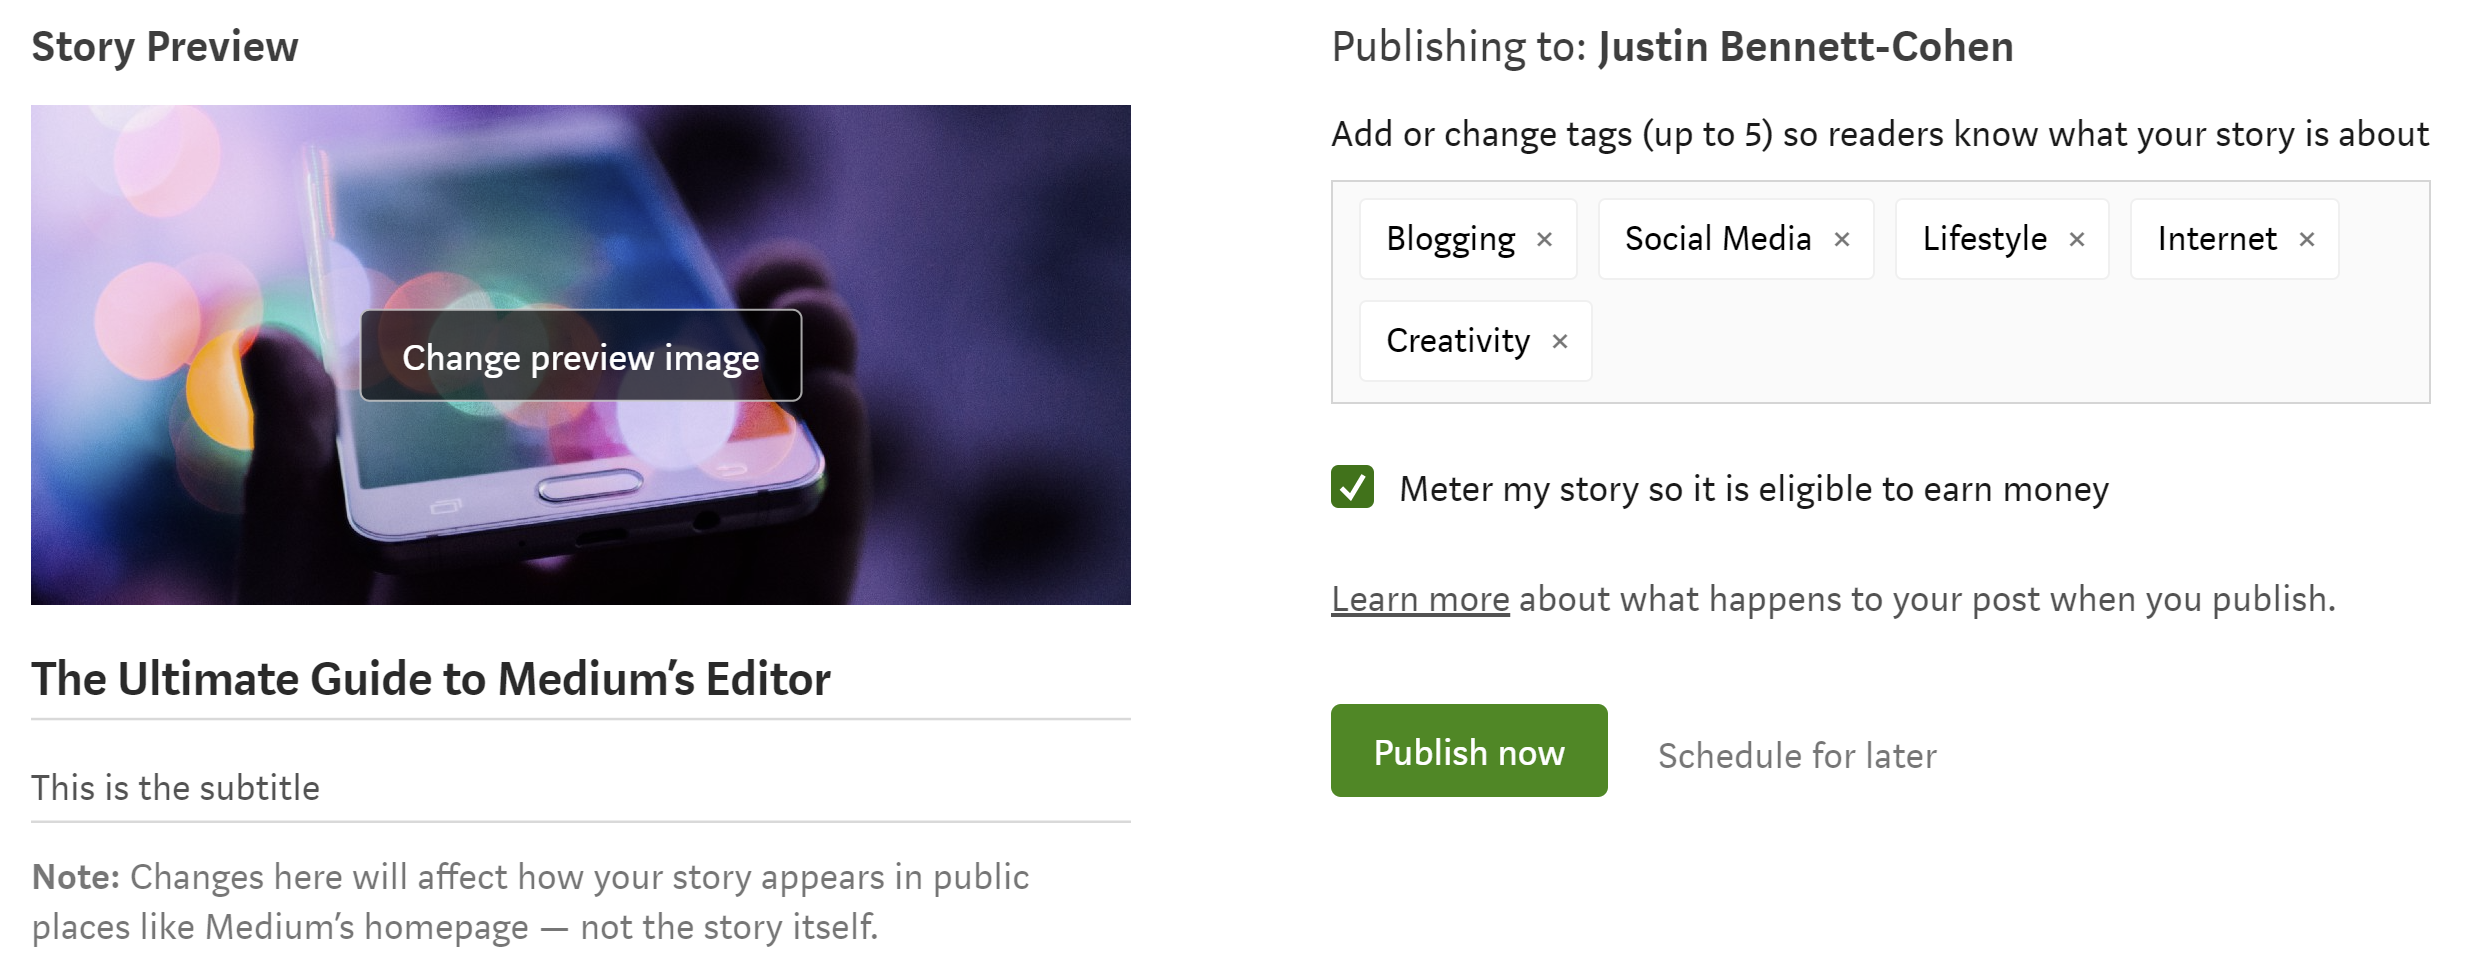 Publishing your Medium Story - La guida definitiva all’editor di Medium e alla pubblicazione della tua prima storia